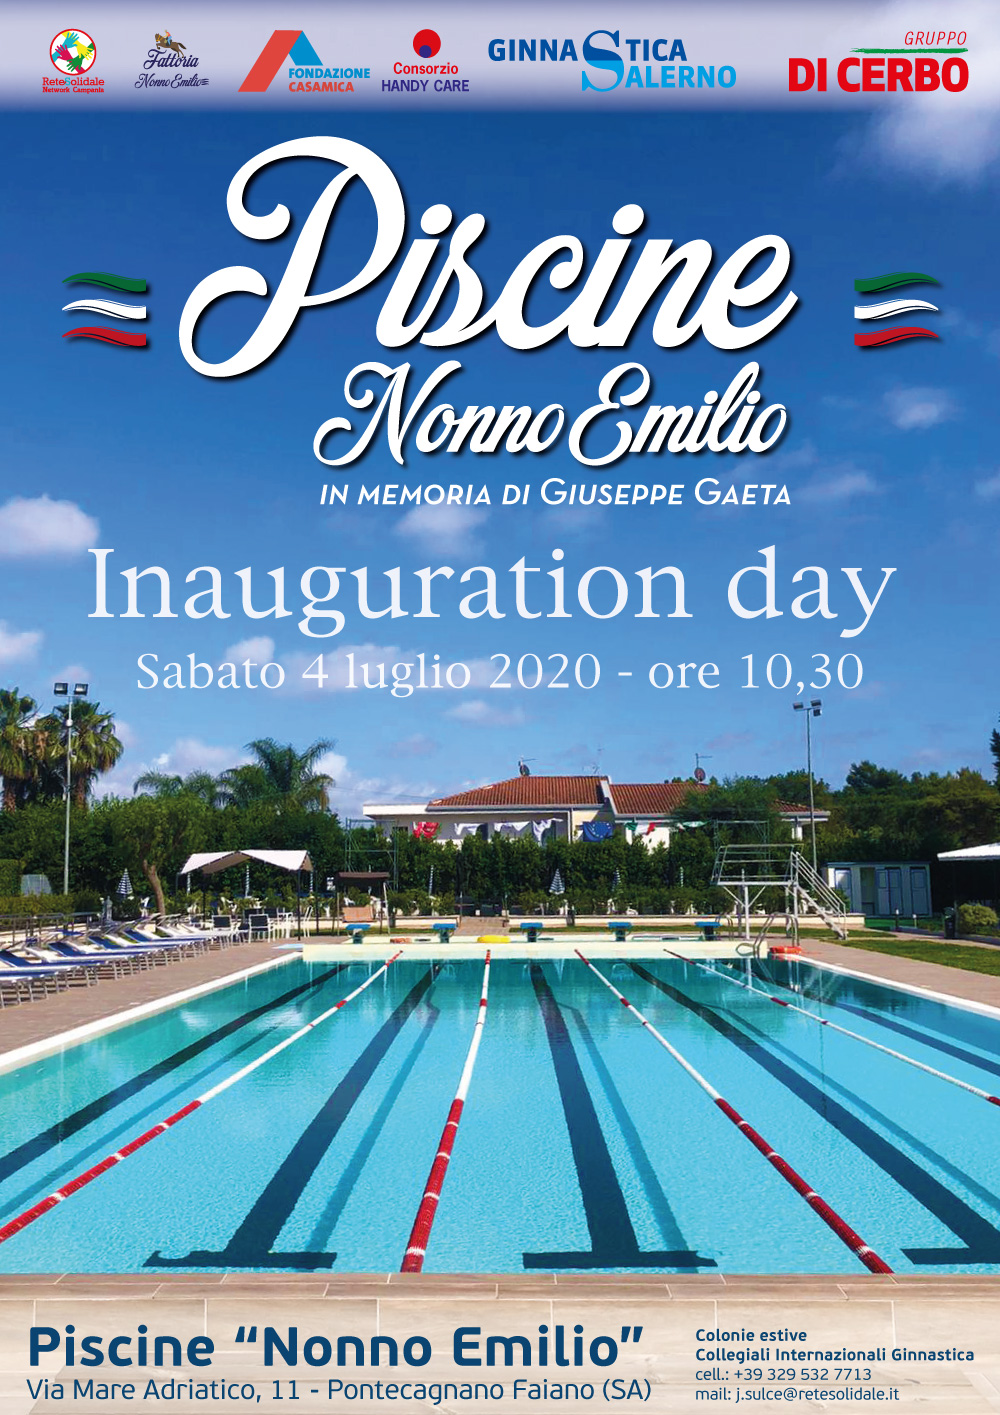 Piscine “Nonno Emilio”, inauguration day